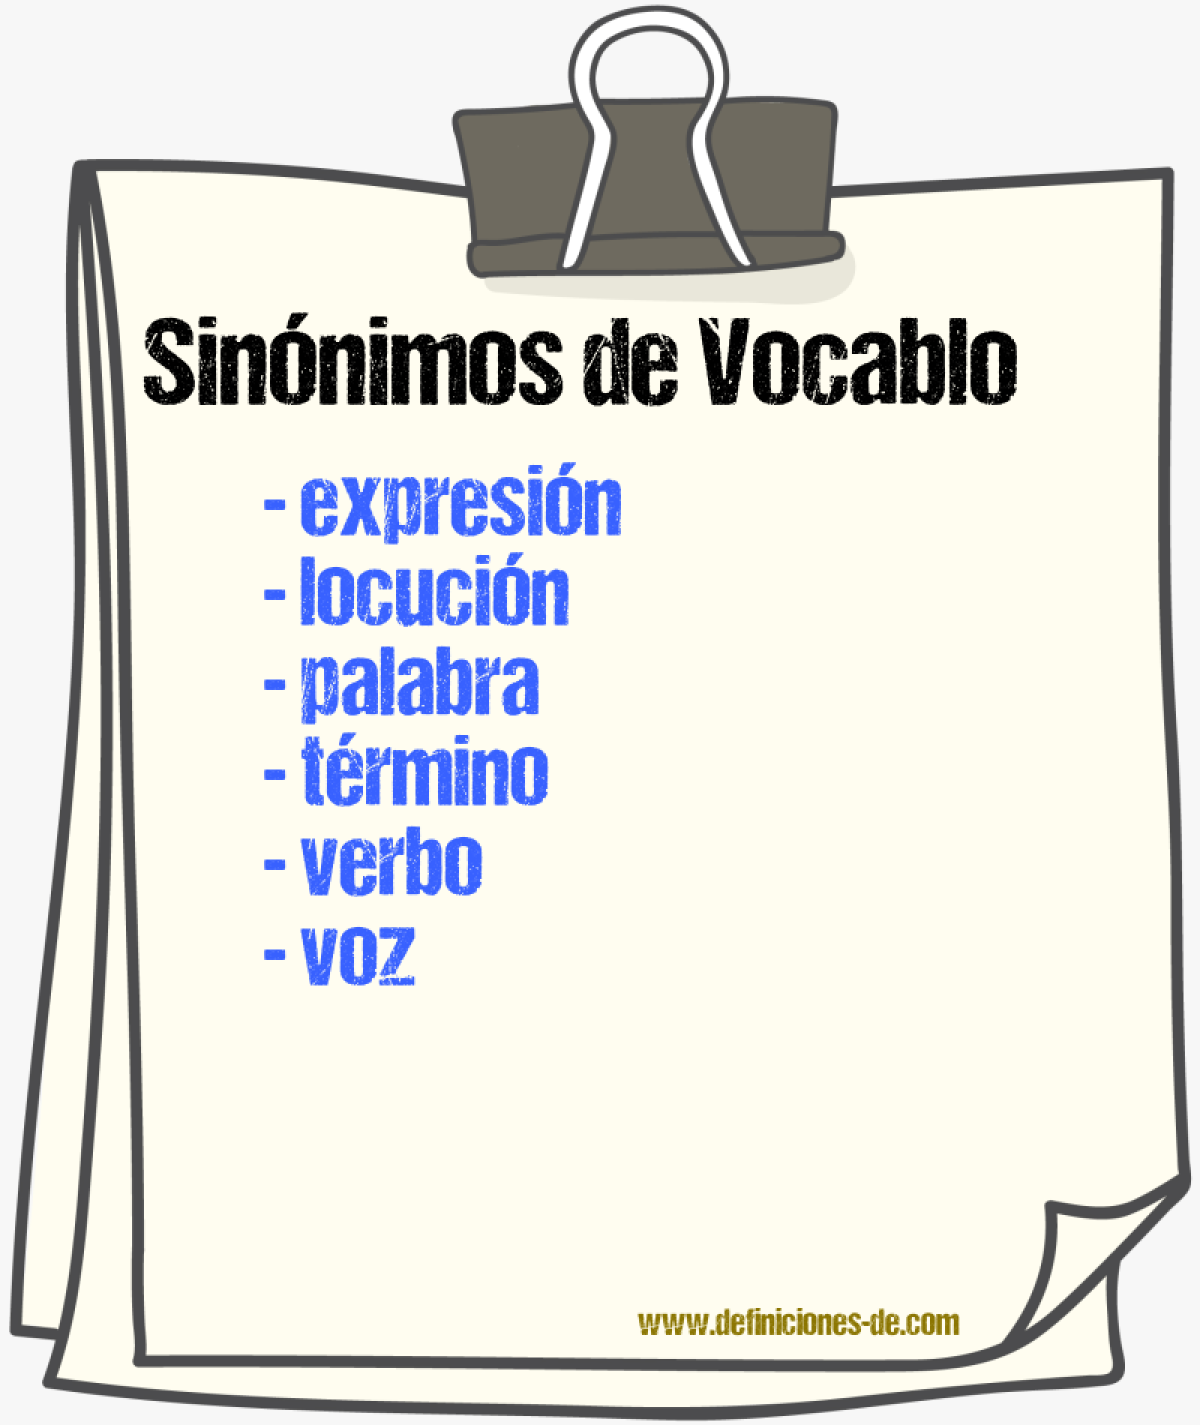 Sinónimos de vocablo